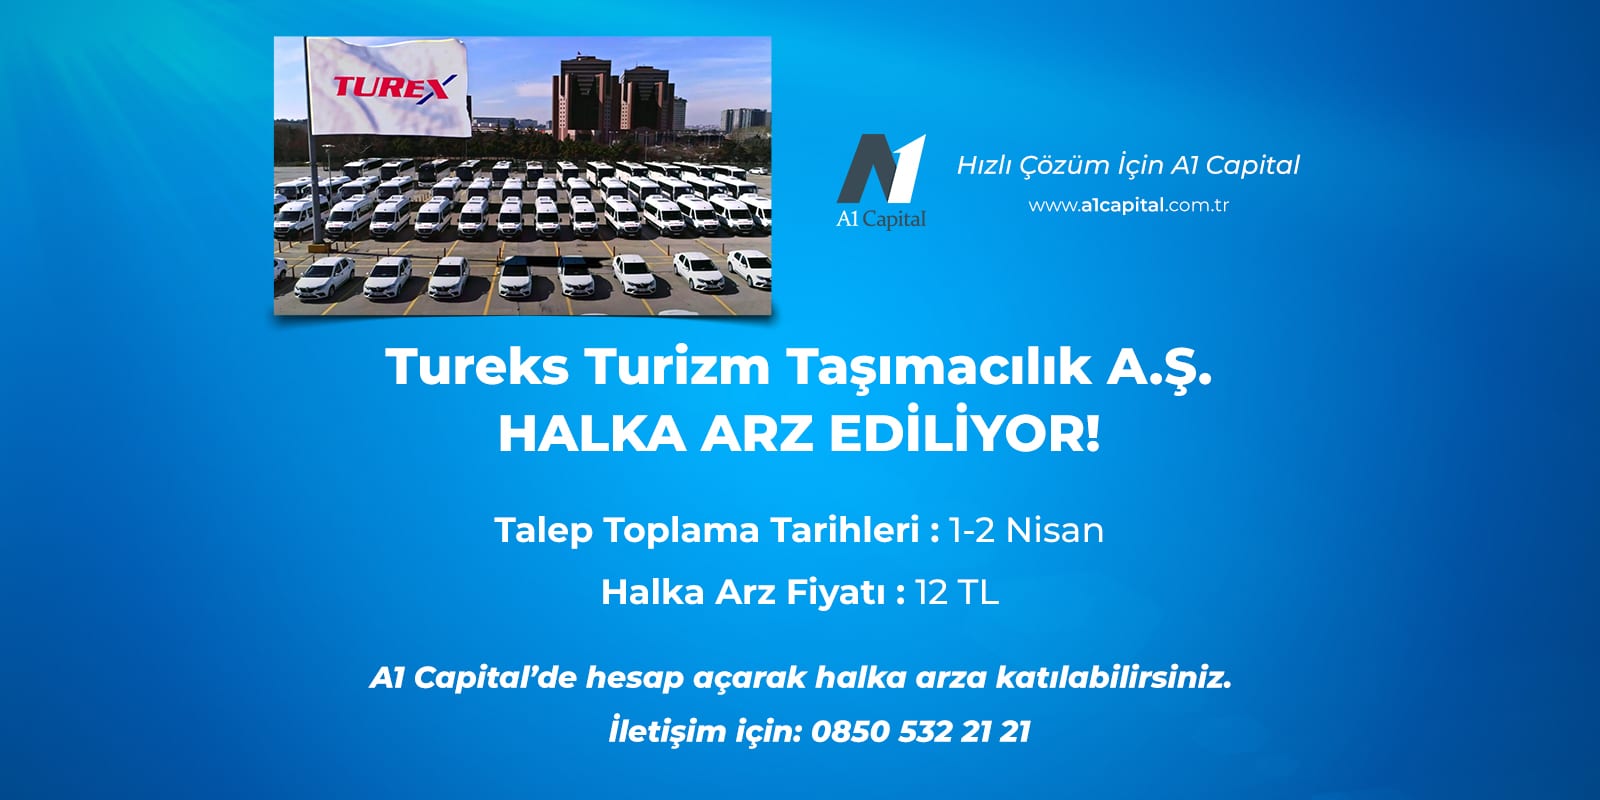 Tureks Turizm Halka Arz - A1 Capital